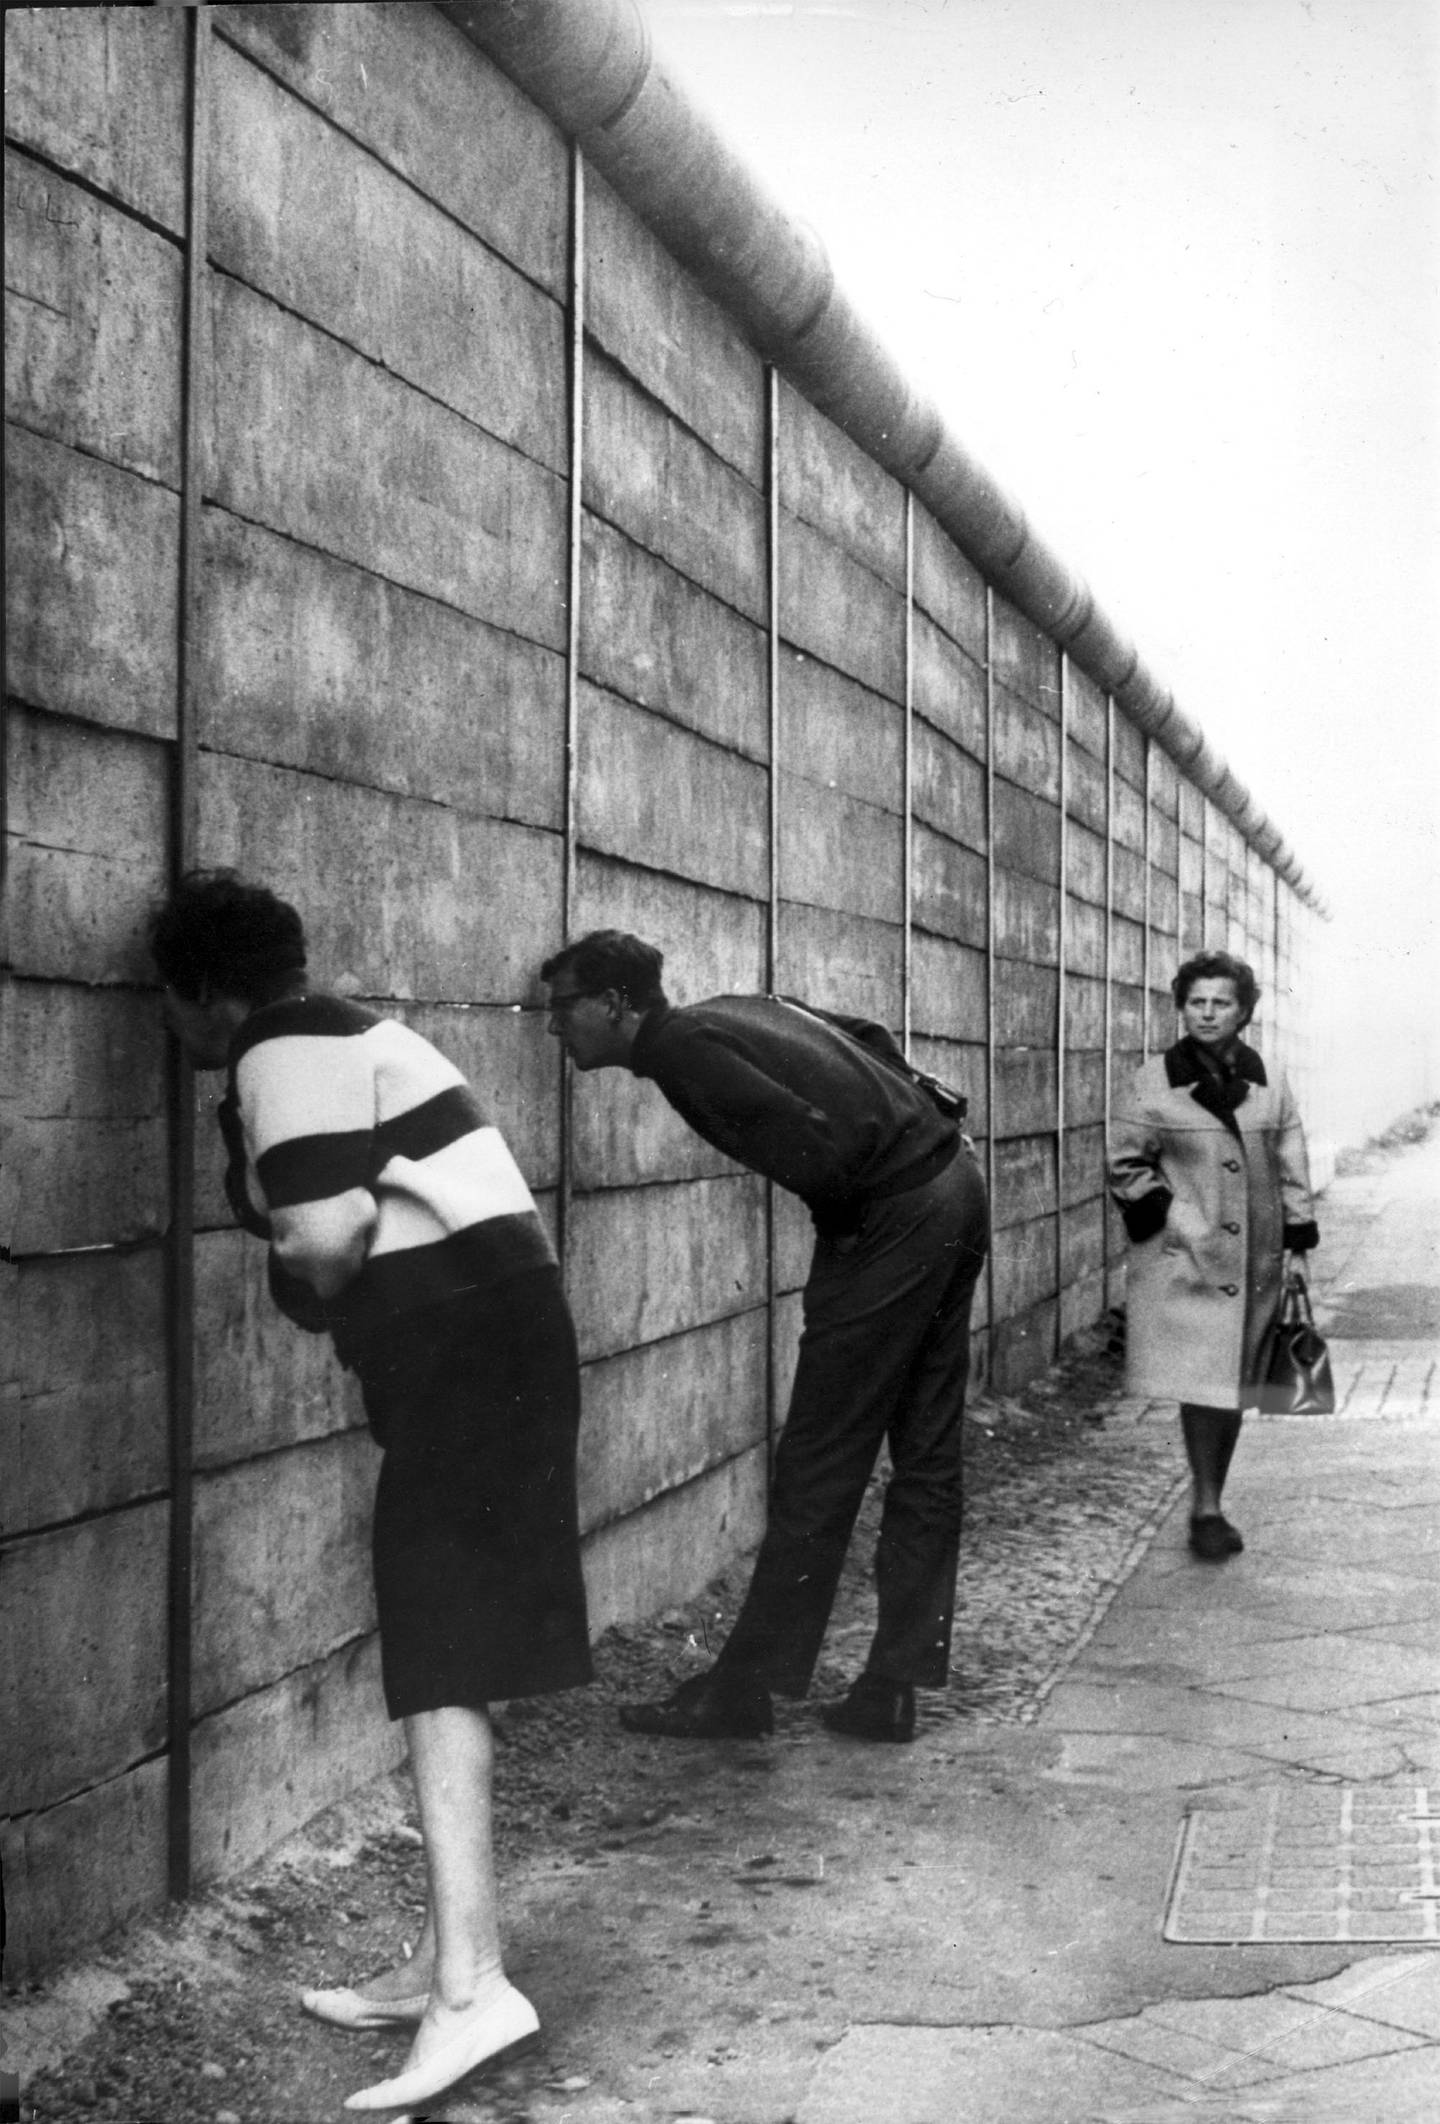 Bildet er av folk i Vest-Berlin som ser inn til Øst-Berlin gjennom sprekker i muren. Den er høy, og har en sylinder på toppen. Det gjør at muren buer ut på toppen, og blir vanskeligere å klatre over. En dame kommer gående i bakgrunnen. Foto: Keystone / Billedsentralen / NTB